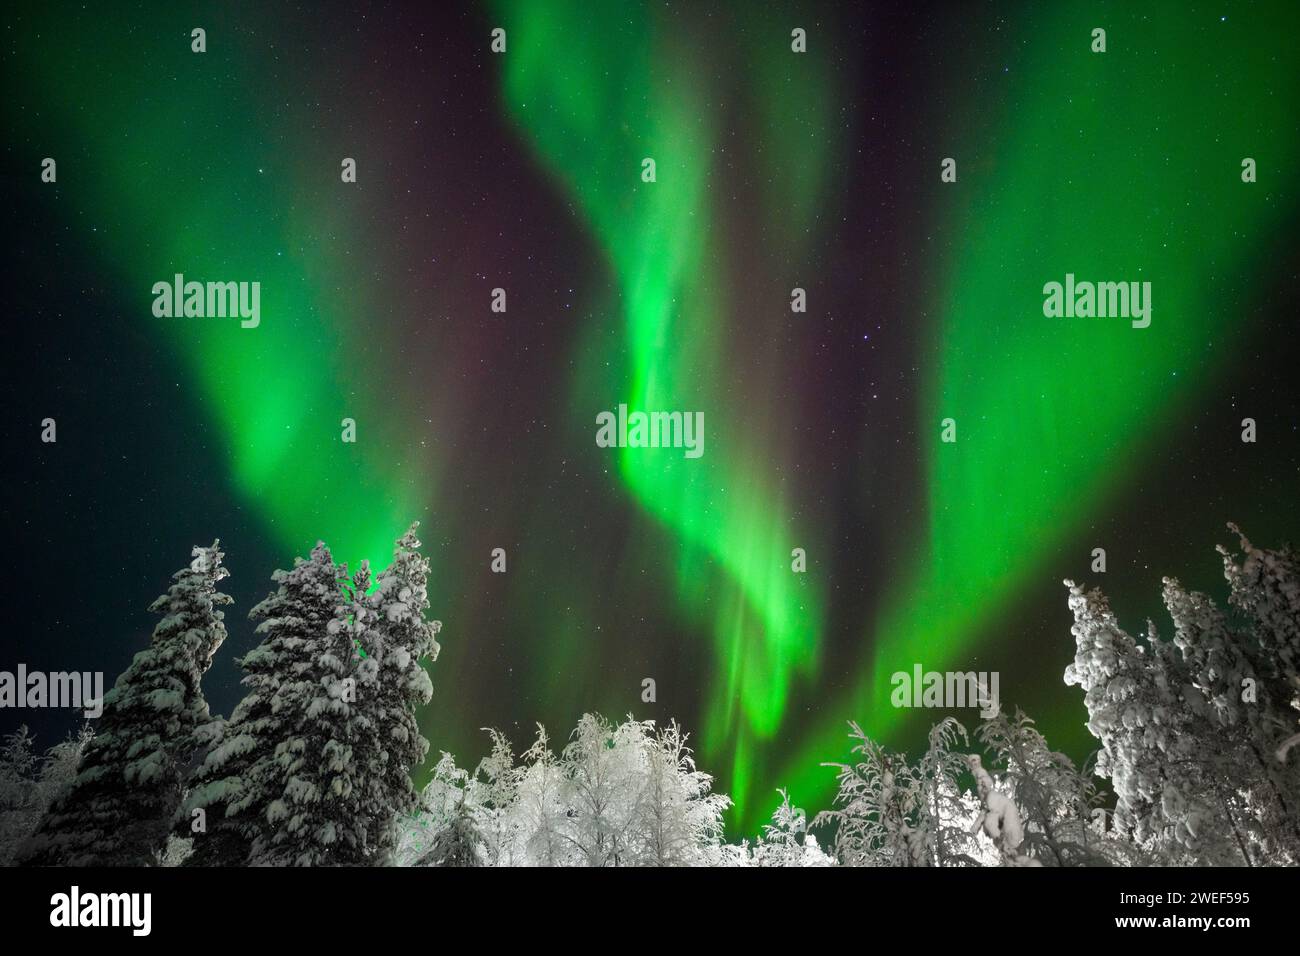 L'aurora boreale o aurora boreale con alberi innevati a Levi, nella regione finlandese della Lapponia. Foto Stock